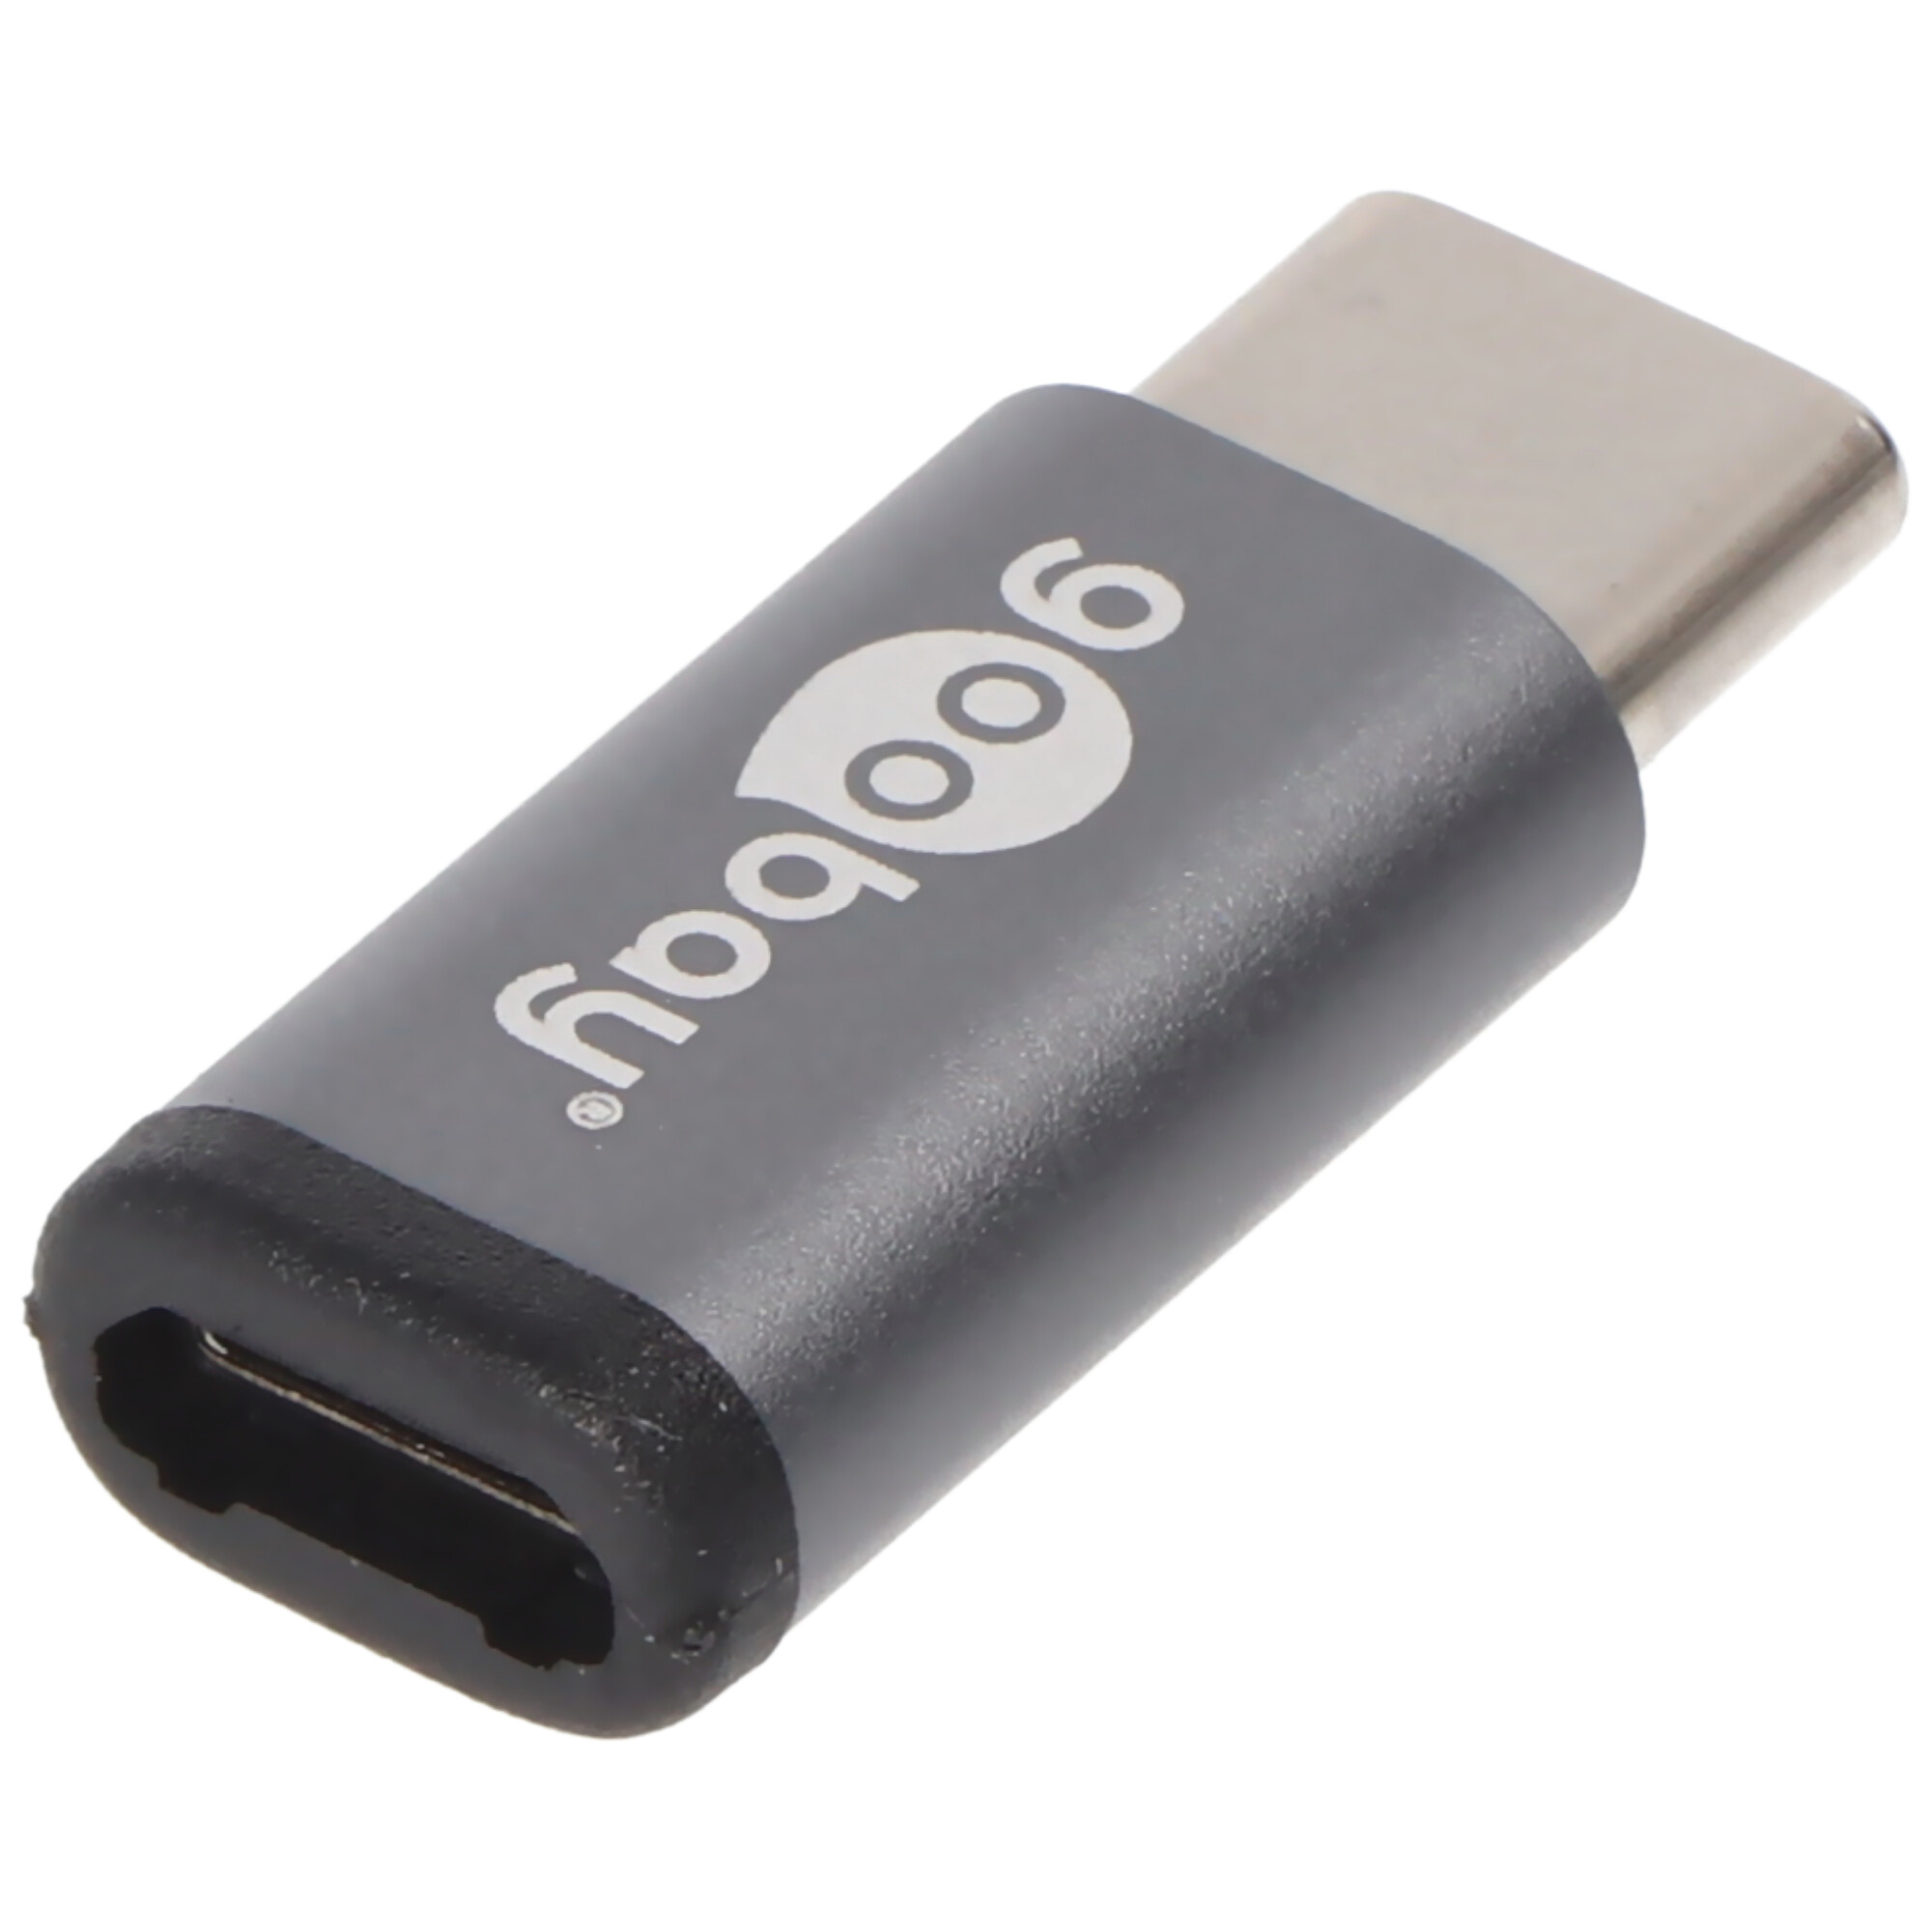 USB-C Adapter zum Verbinden eines USB-C Gerätes mit dem älteren USB 2.0 Micro-B Kabel bzw. Stecker